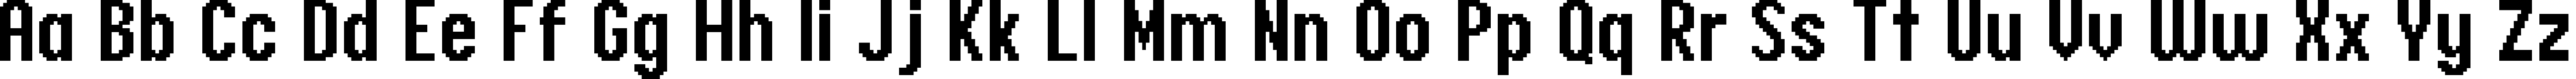 Пример написания английского алфавита шрифтом header 17_67